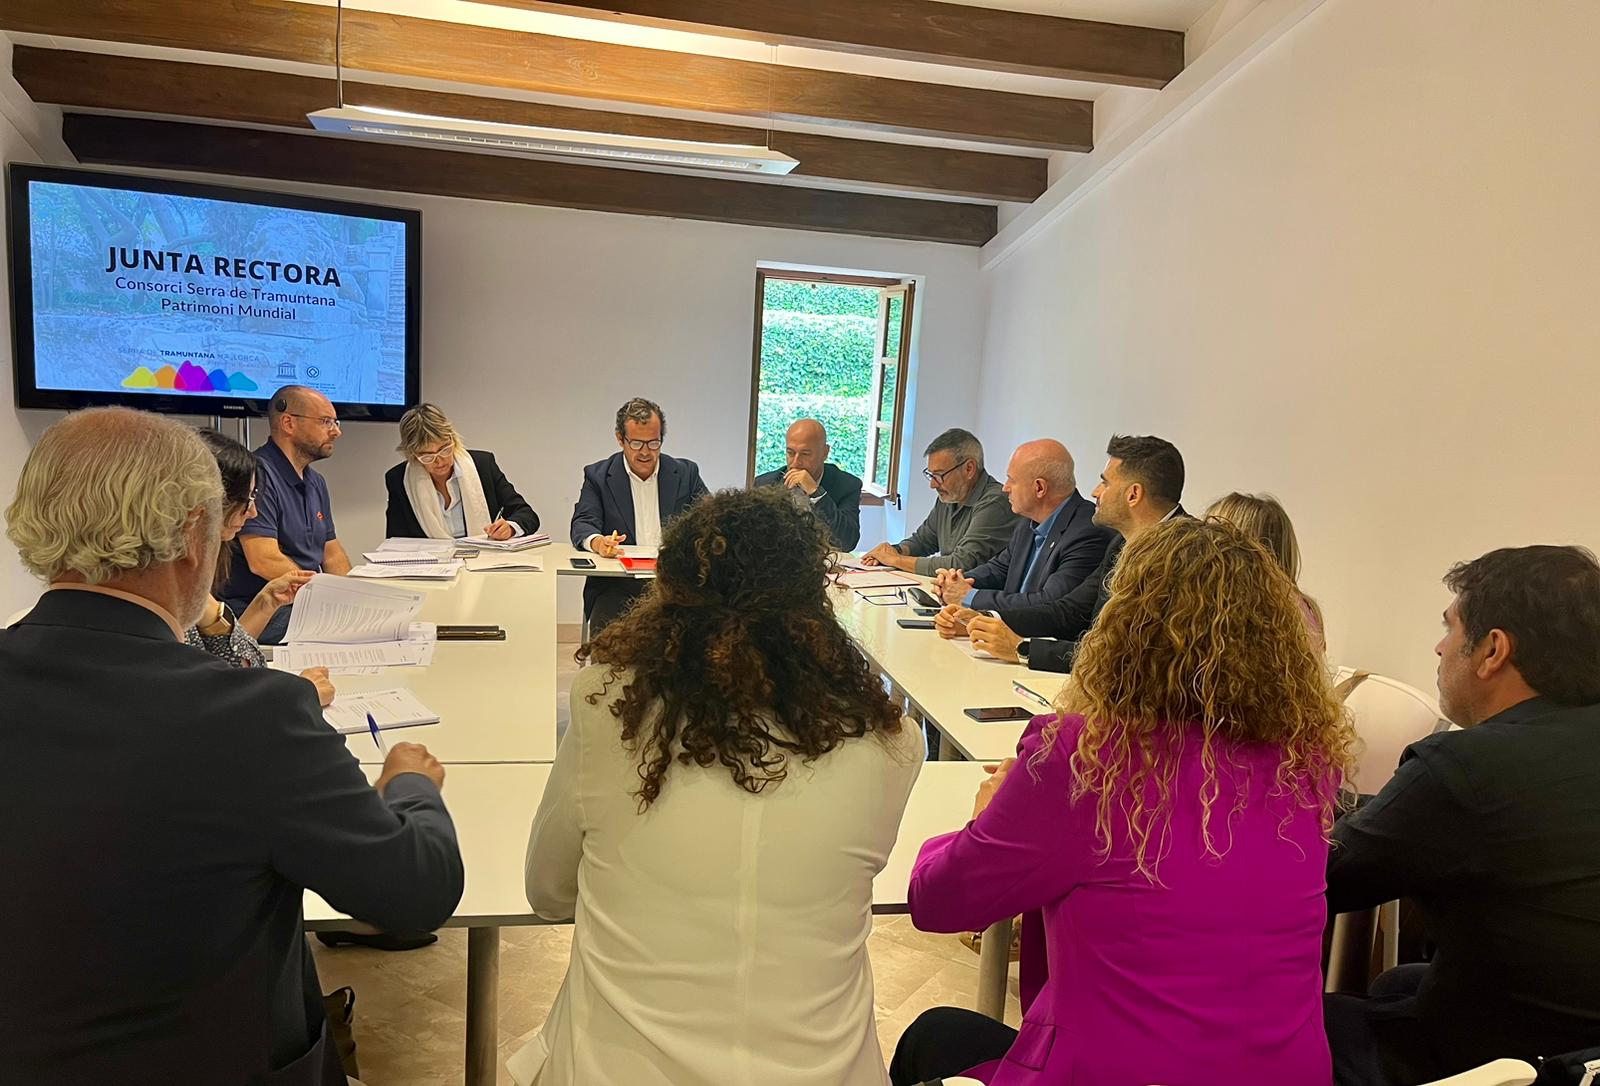 També s'ha celebrat la Junta Rectora on s’ha aprovat el pressupost del Consorci Serra de Tramuntana